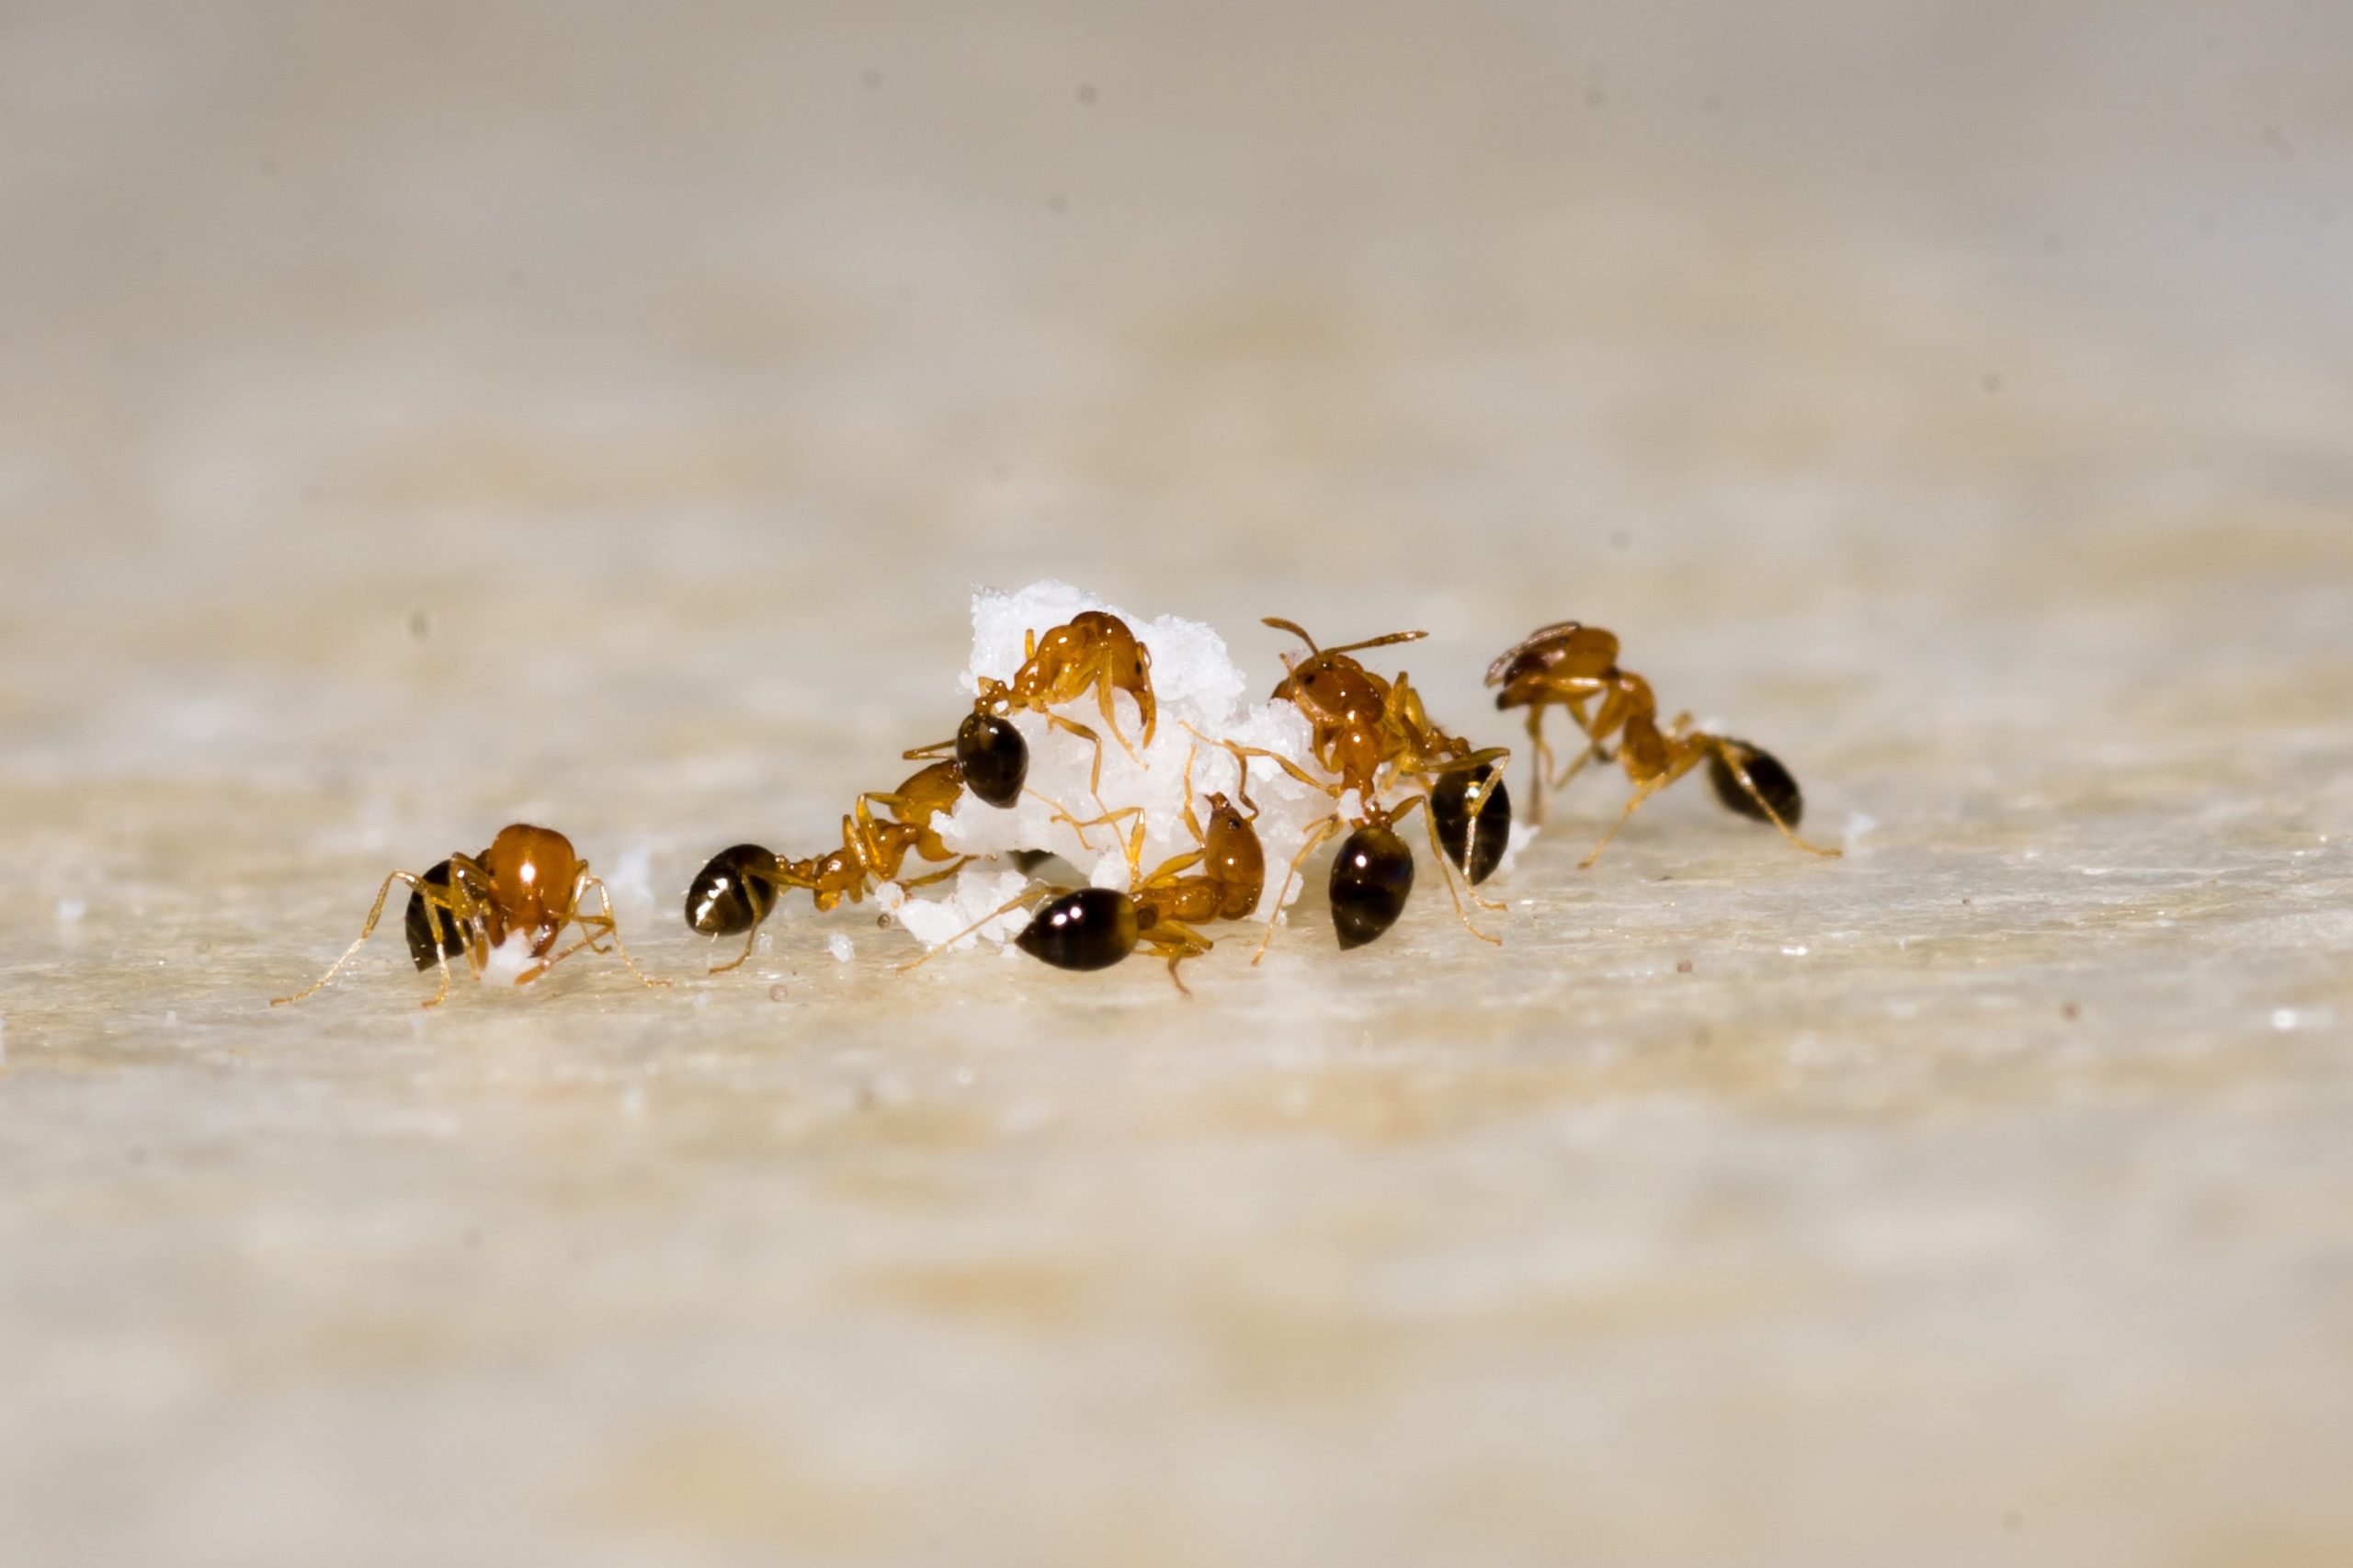 jak się pozbyć mrówek z domu?